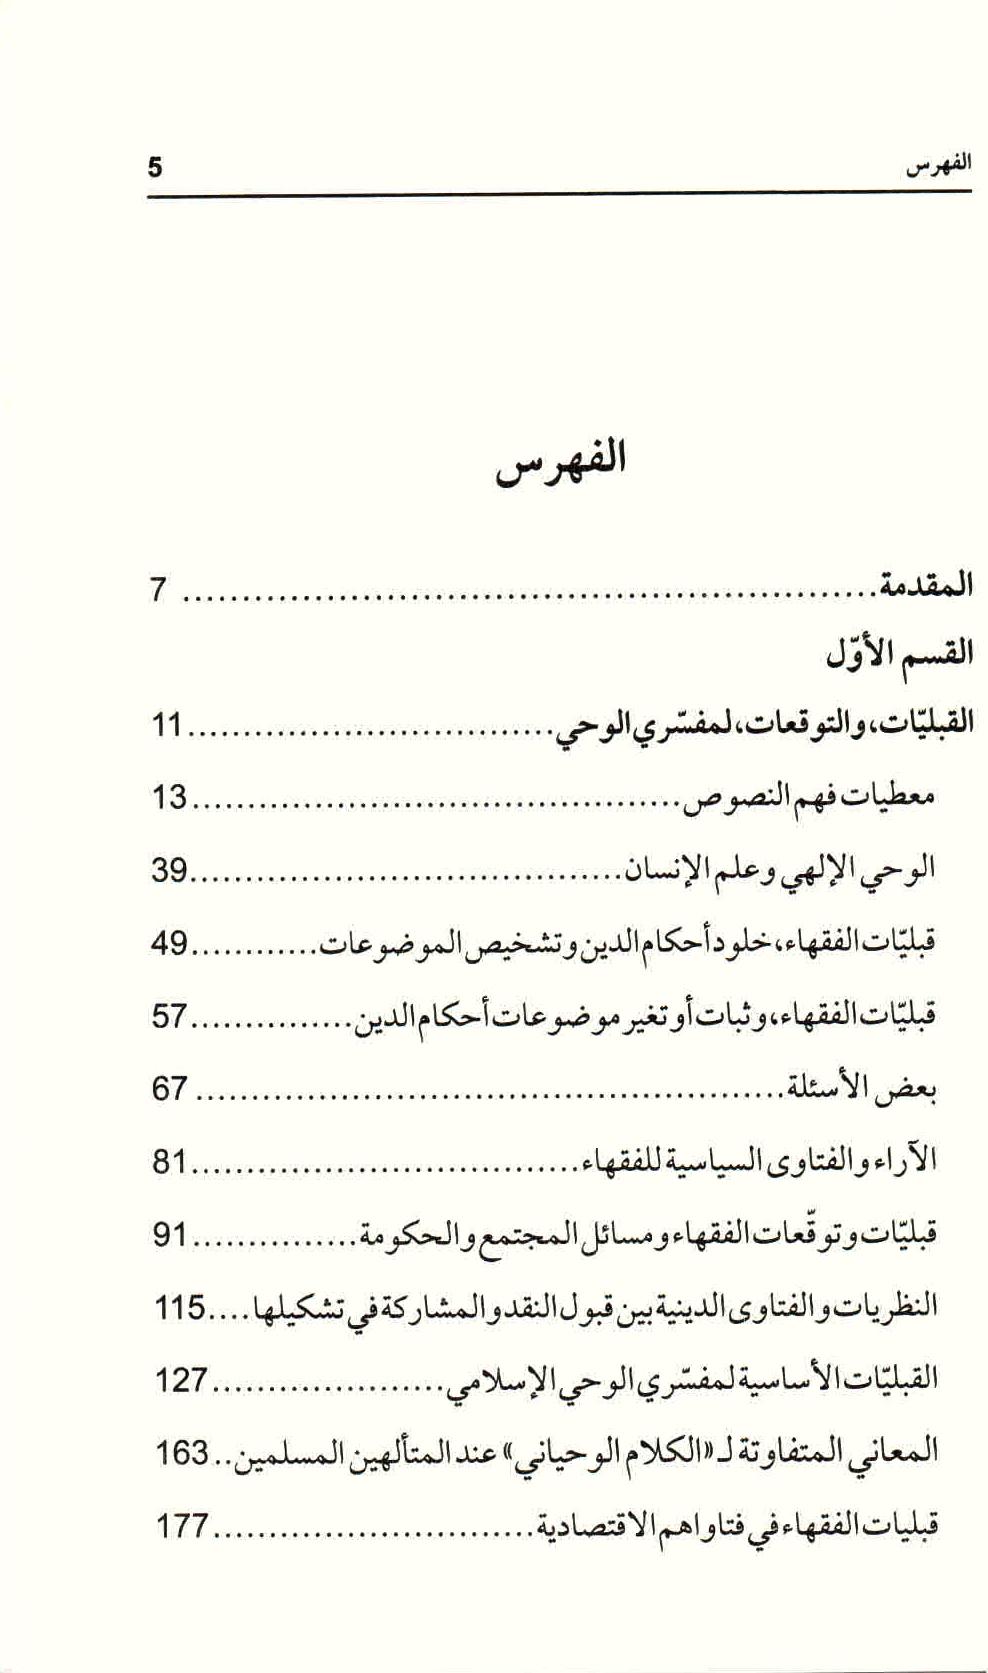  ص. 5 محتويات كتاب هرمنيوطيقا القرآن والسنة